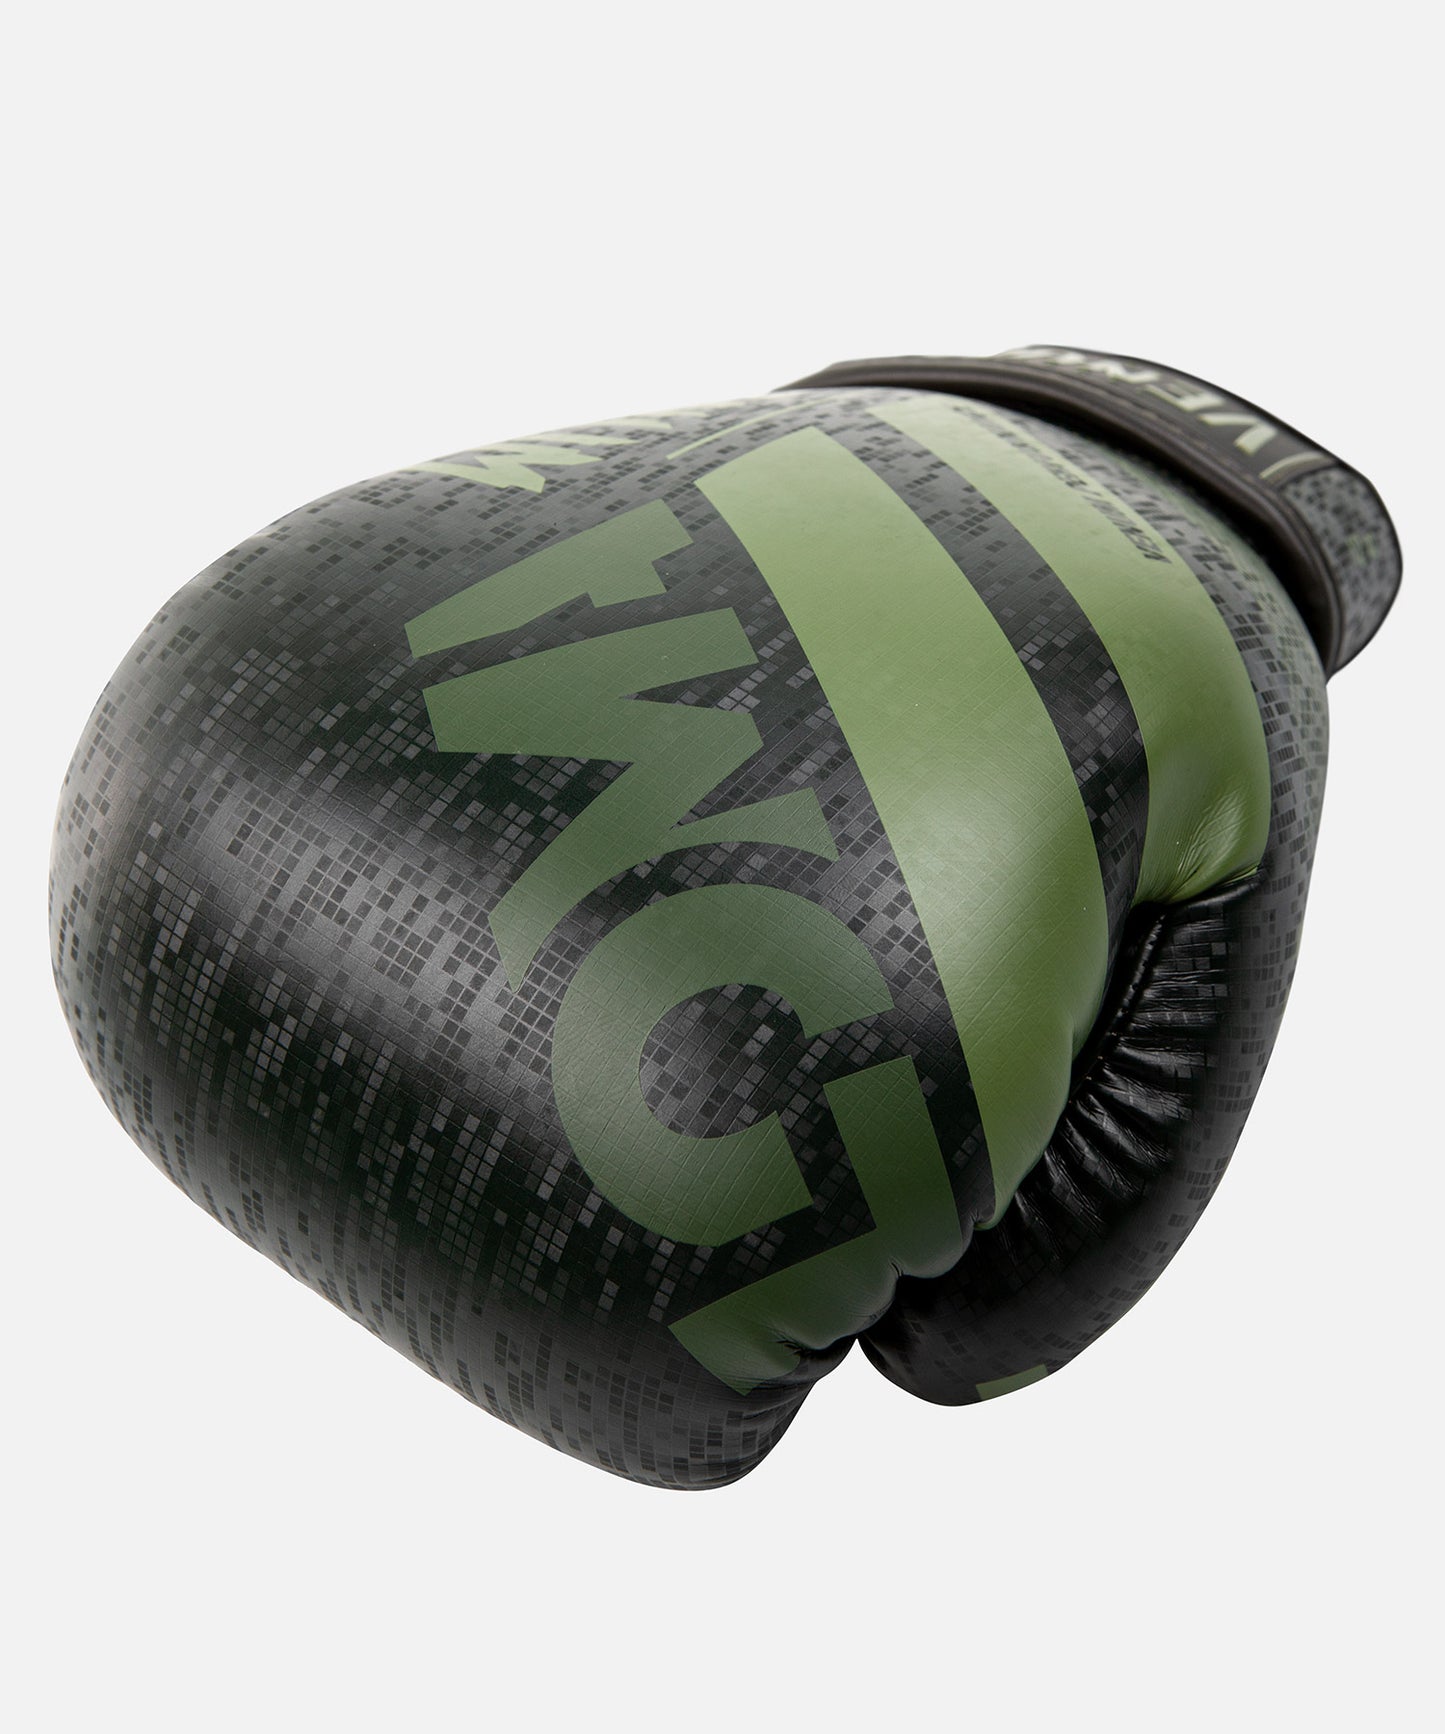 Venum Commando Boxing Gloves Loma Edition